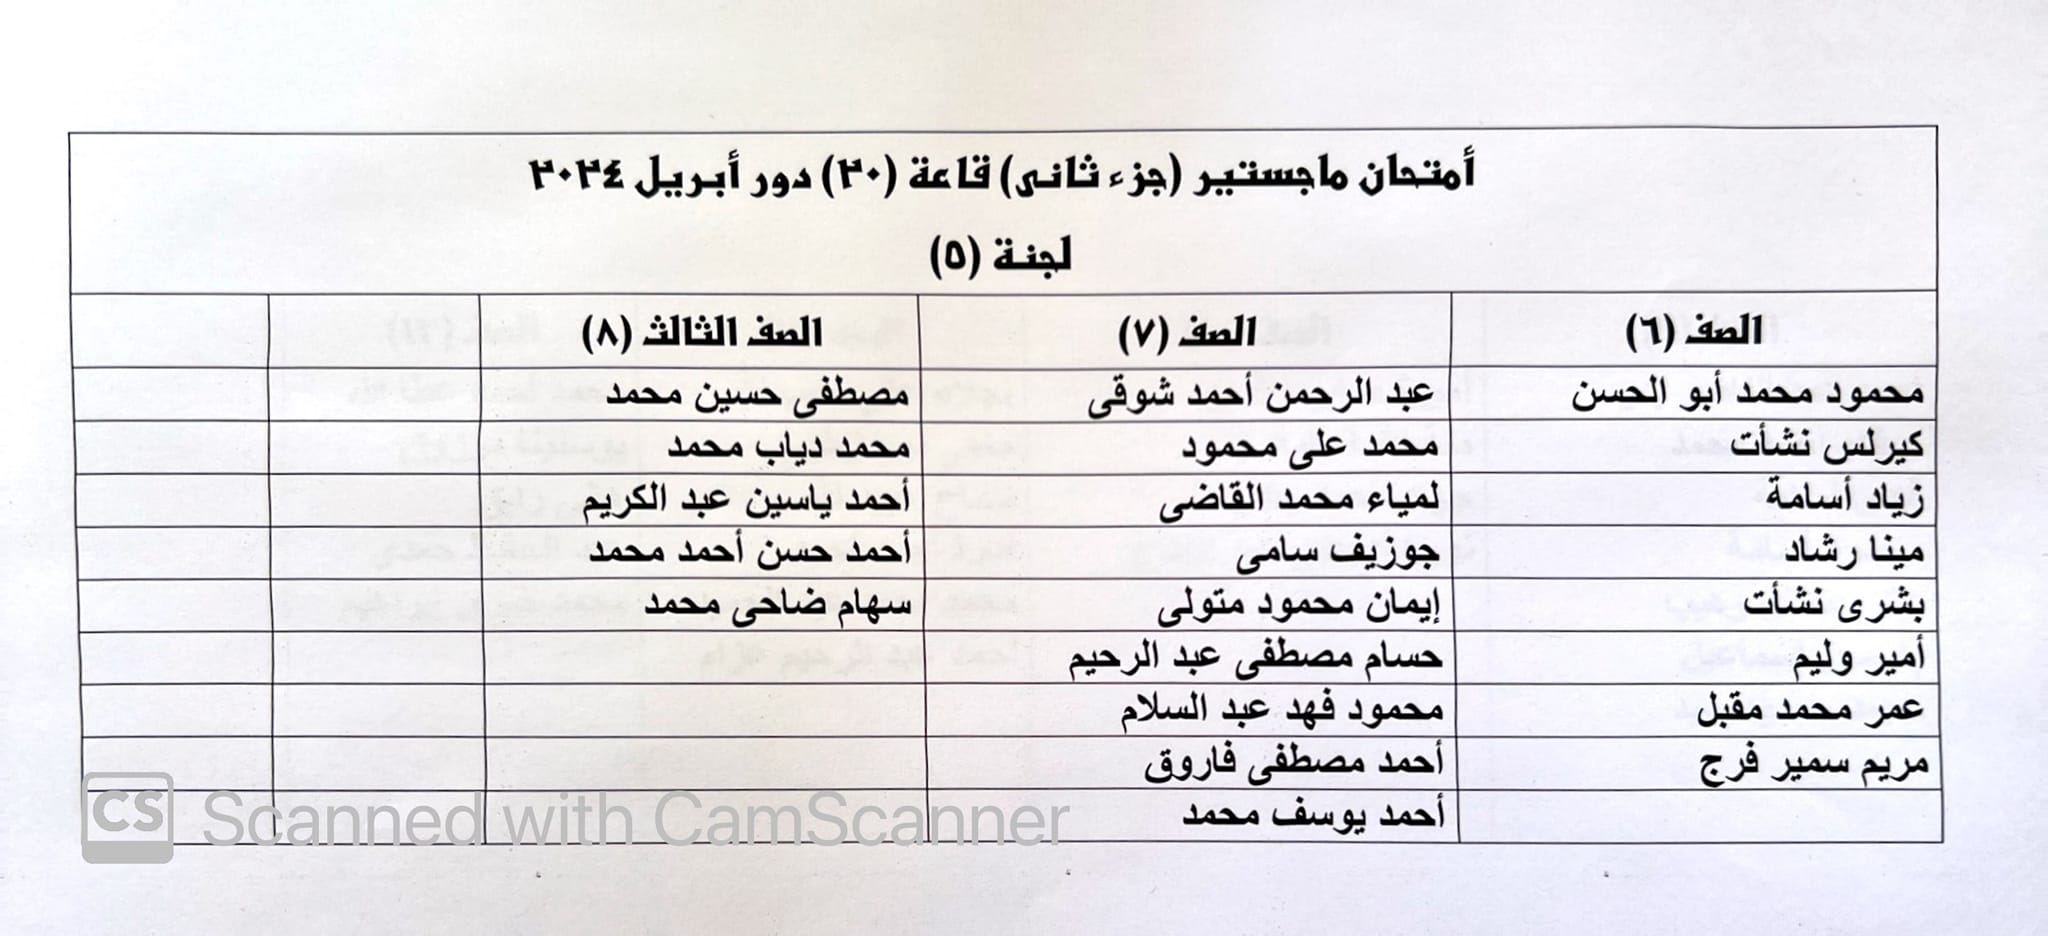 تقسيم قاعات امتحانات ماجستير جزء ثان دور ابريل ٢٠٢٤ قاعات (١٩) و (٢٠) اسفل بنك مصر